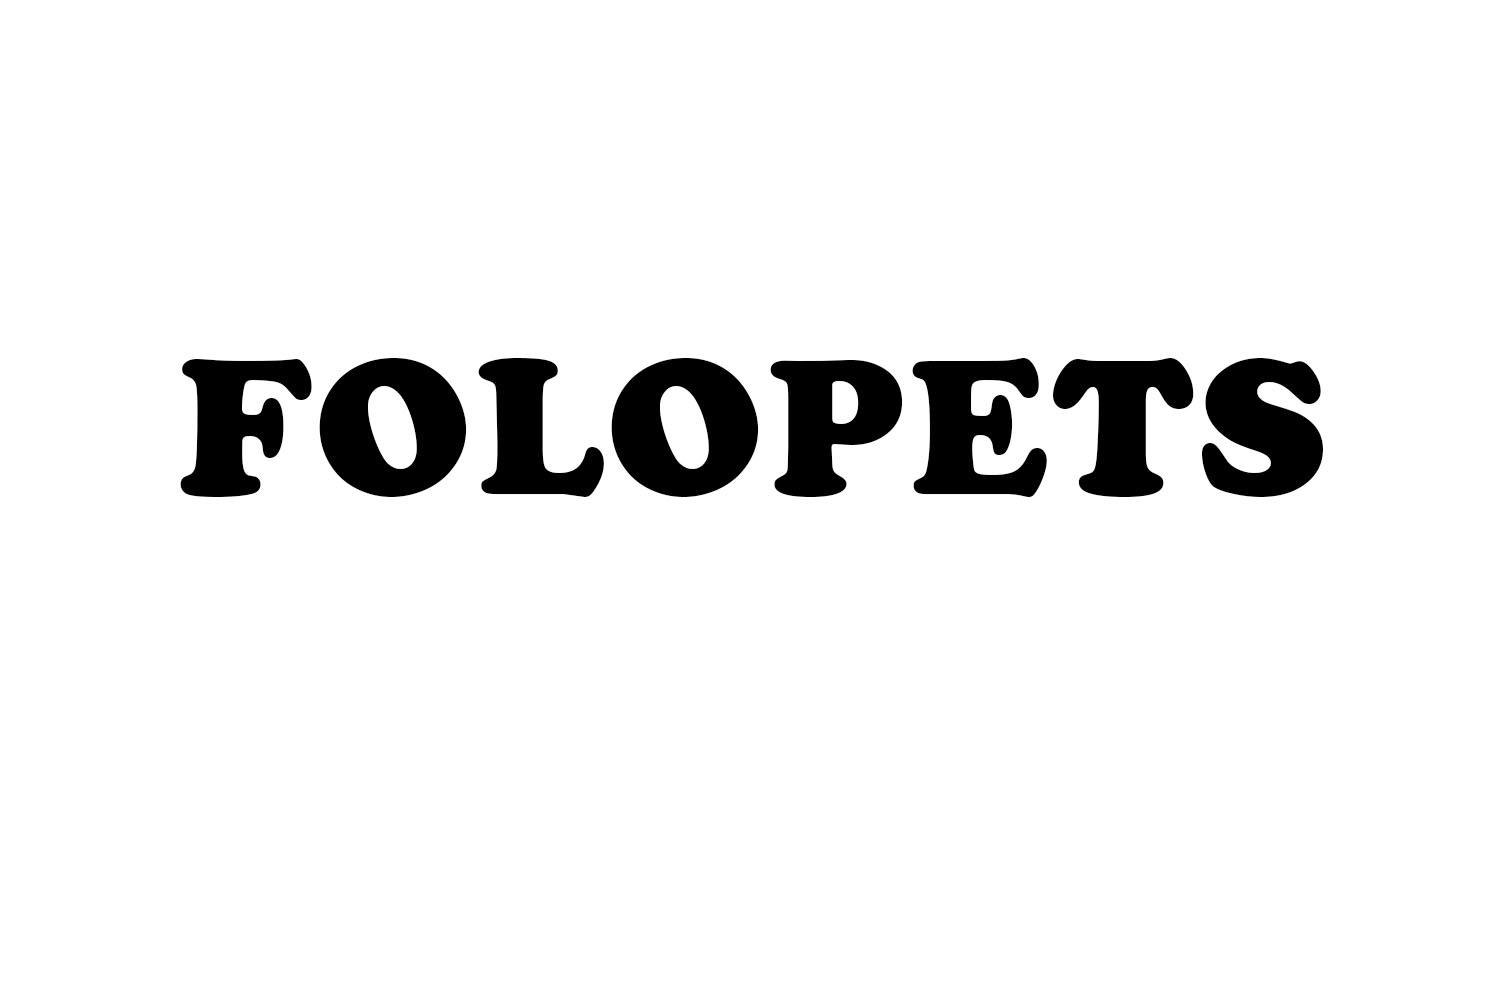 FOLOPETS